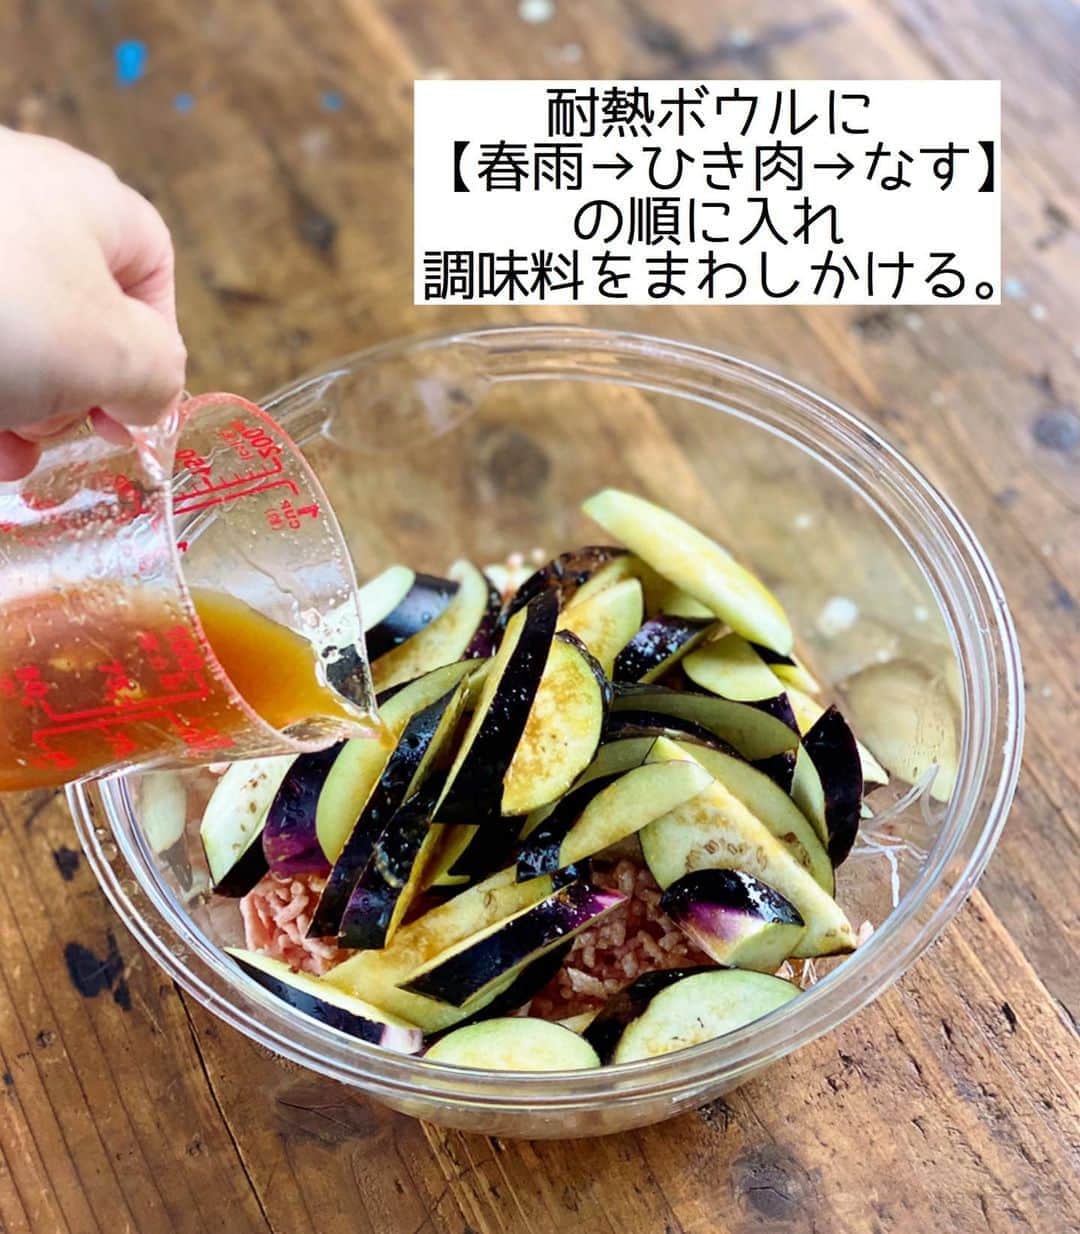 Mizuki【料理ブロガー・簡単レシピ】さんのインスタグラム写真 - (Mizuki【料理ブロガー・簡単レシピ】Instagram)「・﻿ 【レシピ】ーーーーーーーーーーーーーーーーー﻿ ♡レンジde6分♡ひき肉となすのチャプチェ風♡﻿ ーーーーーーーーーーーーーーーーーーーーーー﻿ ﻿ ﻿ ﻿ おはようございます(*^^*)﻿ ﻿ 今日ご紹介させていただくのは﻿ レンジでできるチャプチェ風♡﻿ ひき肉となすをたっぷり加えて﻿ しっかり食べ応えを出しました♩﻿ ﻿ 作り方は超簡単(*´艸`)﻿ 春雨は戻さない！﻿ 味付けは焼肉のたれで失敗なし！﻿ 加熱はレンジでたったの6分！﻿ ﻿ 思い立ったらすぐにできるので﻿ お気軽にお試し下さいね(*^^*)﻿ ﻿ ﻿ ﻿ ーーーーーーーーーーーーーーーーーーーー﻿ 【2人分】﻿ 豚ひき肉...100g﻿ なす...2本(150g)﻿ 春雨...50g﻿ ●水...150ml﻿ ●焼肉のたれ...大3﻿ ●ごま油...小1﻿ ●鶏がらスープ...小1/2﻿ ●生姜チューブ...2cm﻿ (好みで)万能ねぎ・ラー油...各適量﻿ ﻿ 1.春雨は(長ければ)長さを半分に切る。なすは縦半分に切って1cm幅の斜め切りにし、水に3分晒して水気を切る。●は合わせておく。﻿ 2.耐熱ボウルに春雨、ひき肉、なすの順に入れ、●をまわしかける。ふんわりラップをかけ、600Wのレンジで6分加熱する。﻿ 3.取り出してよく混ぜ、斜め切りにしたねぎとラー油をかける。﻿ ーーーーーーーーーーーーーーーーーーーー﻿ ﻿ ﻿ ﻿ 《ポイント》﻿ ♦︎春雨は乾燥のまま使用します♩﻿ ♦︎レンチン後、残った水分を春雨に吸わせるようによく混ぜて下さい♩﻿ ﻿ ﻿ ﻿ ﻿ ﻿ ﻿ ＿＿＿＿＿＿＿＿＿＿＿＿＿＿＿＿＿＿＿﻿ 📕6刷重版しました📕﻿ 簡単・時短！ 毎日のごはんがラクになる﻿ ✨🦋 【 #Mizukiの今どき和食 】🦋✨﻿ ＿＿＿＿＿＿＿＿＿＿＿＿＿＿＿＿＿＿＿﻿ なるべく少ない材料で﻿ 手間も時間も省きながら﻿ 簡単にできるおいしい和食レシピ♩﻿ 簡単に失敗なくマスターできる一冊で﻿ もっと気軽に、カジュアルに﻿ 和食を楽しんで下さいね(*^^*)﻿ ＿＿＿＿＿＿＿＿＿＿＿＿＿＿＿＿＿＿＿﻿ ﻿ ﻿ ﻿ ＿＿＿＿＿＿＿＿＿＿＿＿＿＿＿＿＿＿＿﻿ 🎀6刷重版しました🎀﻿ 混ぜて焼くだけ。はじめてでも失敗しない！﻿ 【#ホットケーキミックスのお菓子 】﻿ ﻿ 一冊まるっとホケミスイーツ♩﻿ 普段のおやつから﻿ 特別な日にも使えるレシピを﻿ この一冊に詰め込みました(*^^*)﻿ ホットケーキミックスを使えば﻿ 簡単に本格的なお菓子が作れますよ♡﻿ ＿＿＿＿＿＿＿＿＿＿＿＿＿＿＿＿＿﻿ ﻿ ﻿ ﻿ ﻿ ￣￣￣￣￣￣￣￣￣￣￣￣￣￣￣￣￣￣﻿ レシピを作って下さった際や﻿ レシピ本についてのご投稿には﻿ タグ付け( @mizuki_31cafe )して﻿ お知らせいただけると嬉しいです😊💕﻿ ＿＿＿＿＿＿＿＿＿＿＿＿＿＿＿＿＿＿﻿ ﻿ ﻿ ﻿ ﻿ ﻿ #レンジ#チャプチェ#なす#焼肉のたれ#ひき肉#Mizuki#簡単レシピ#時短レシピ#節約レシピ#料理#レシピ#フーディーテーブル#マカロニメイト#おうちごはん#デリスタグラマー#料理好きな人と繋がりたい#食べ物#料理記録#おうちごはんlover#写真好きな人と繋がりたい#foodpic#cooking#recipe#lin_stagrammer#foodporn#yummy#ひき肉となすのチャプチェ風m」8月10日 7時10分 - mizuki_31cafe